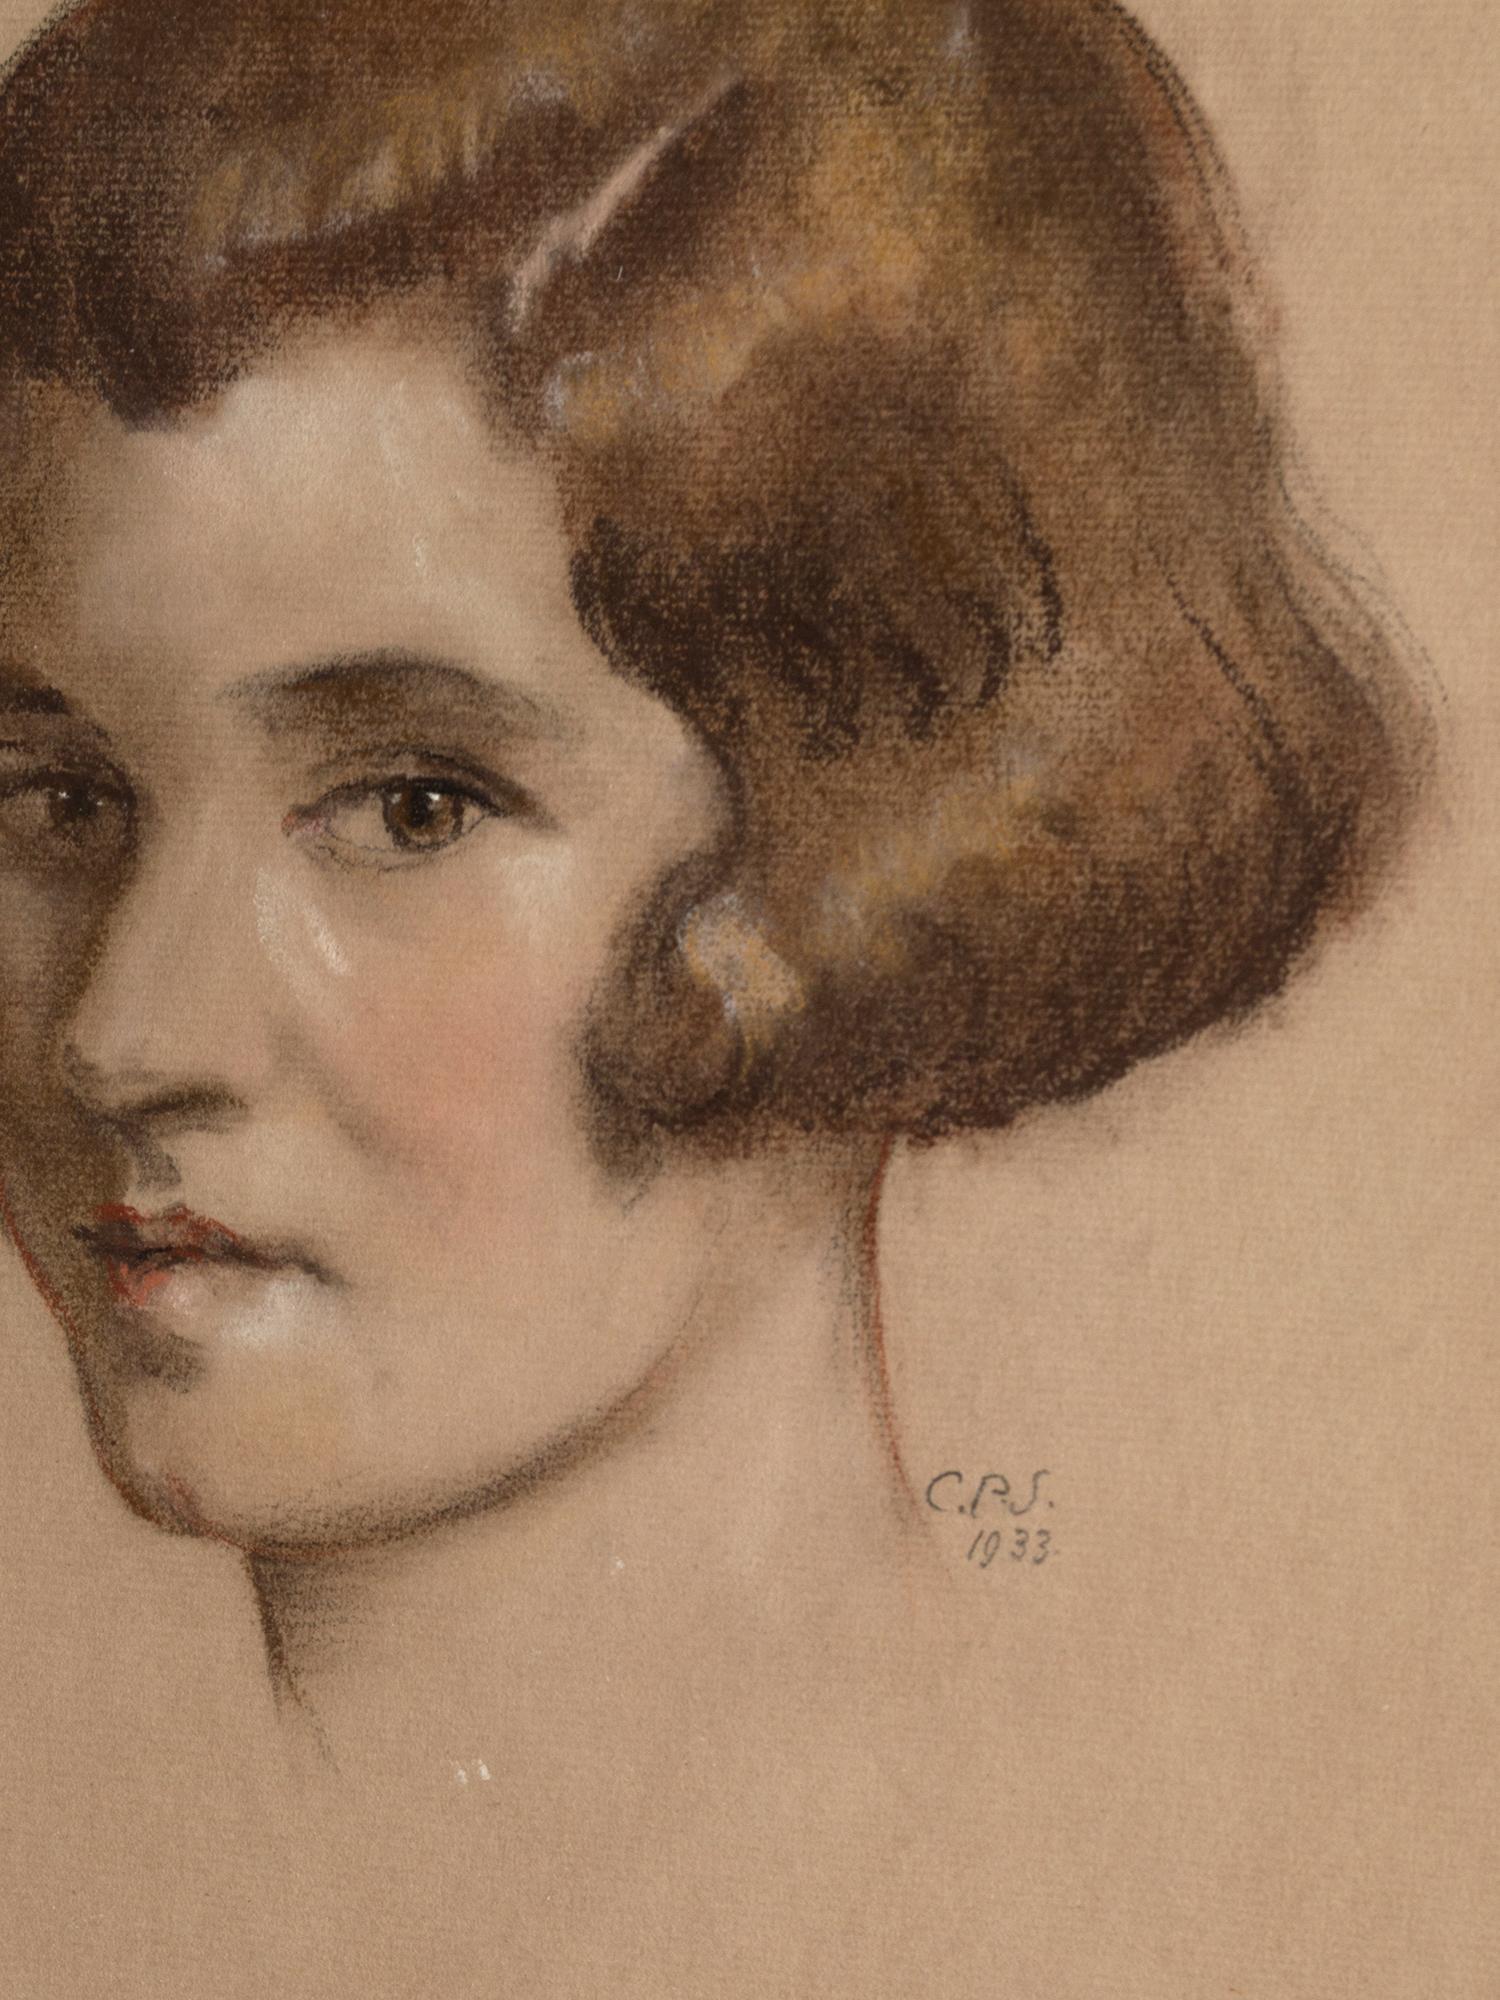 Portrait Art déco d'une jeune femme. Angleterre, 1933.
Dessin au crayon et à la craie, bien exécuté.
Paraphe 